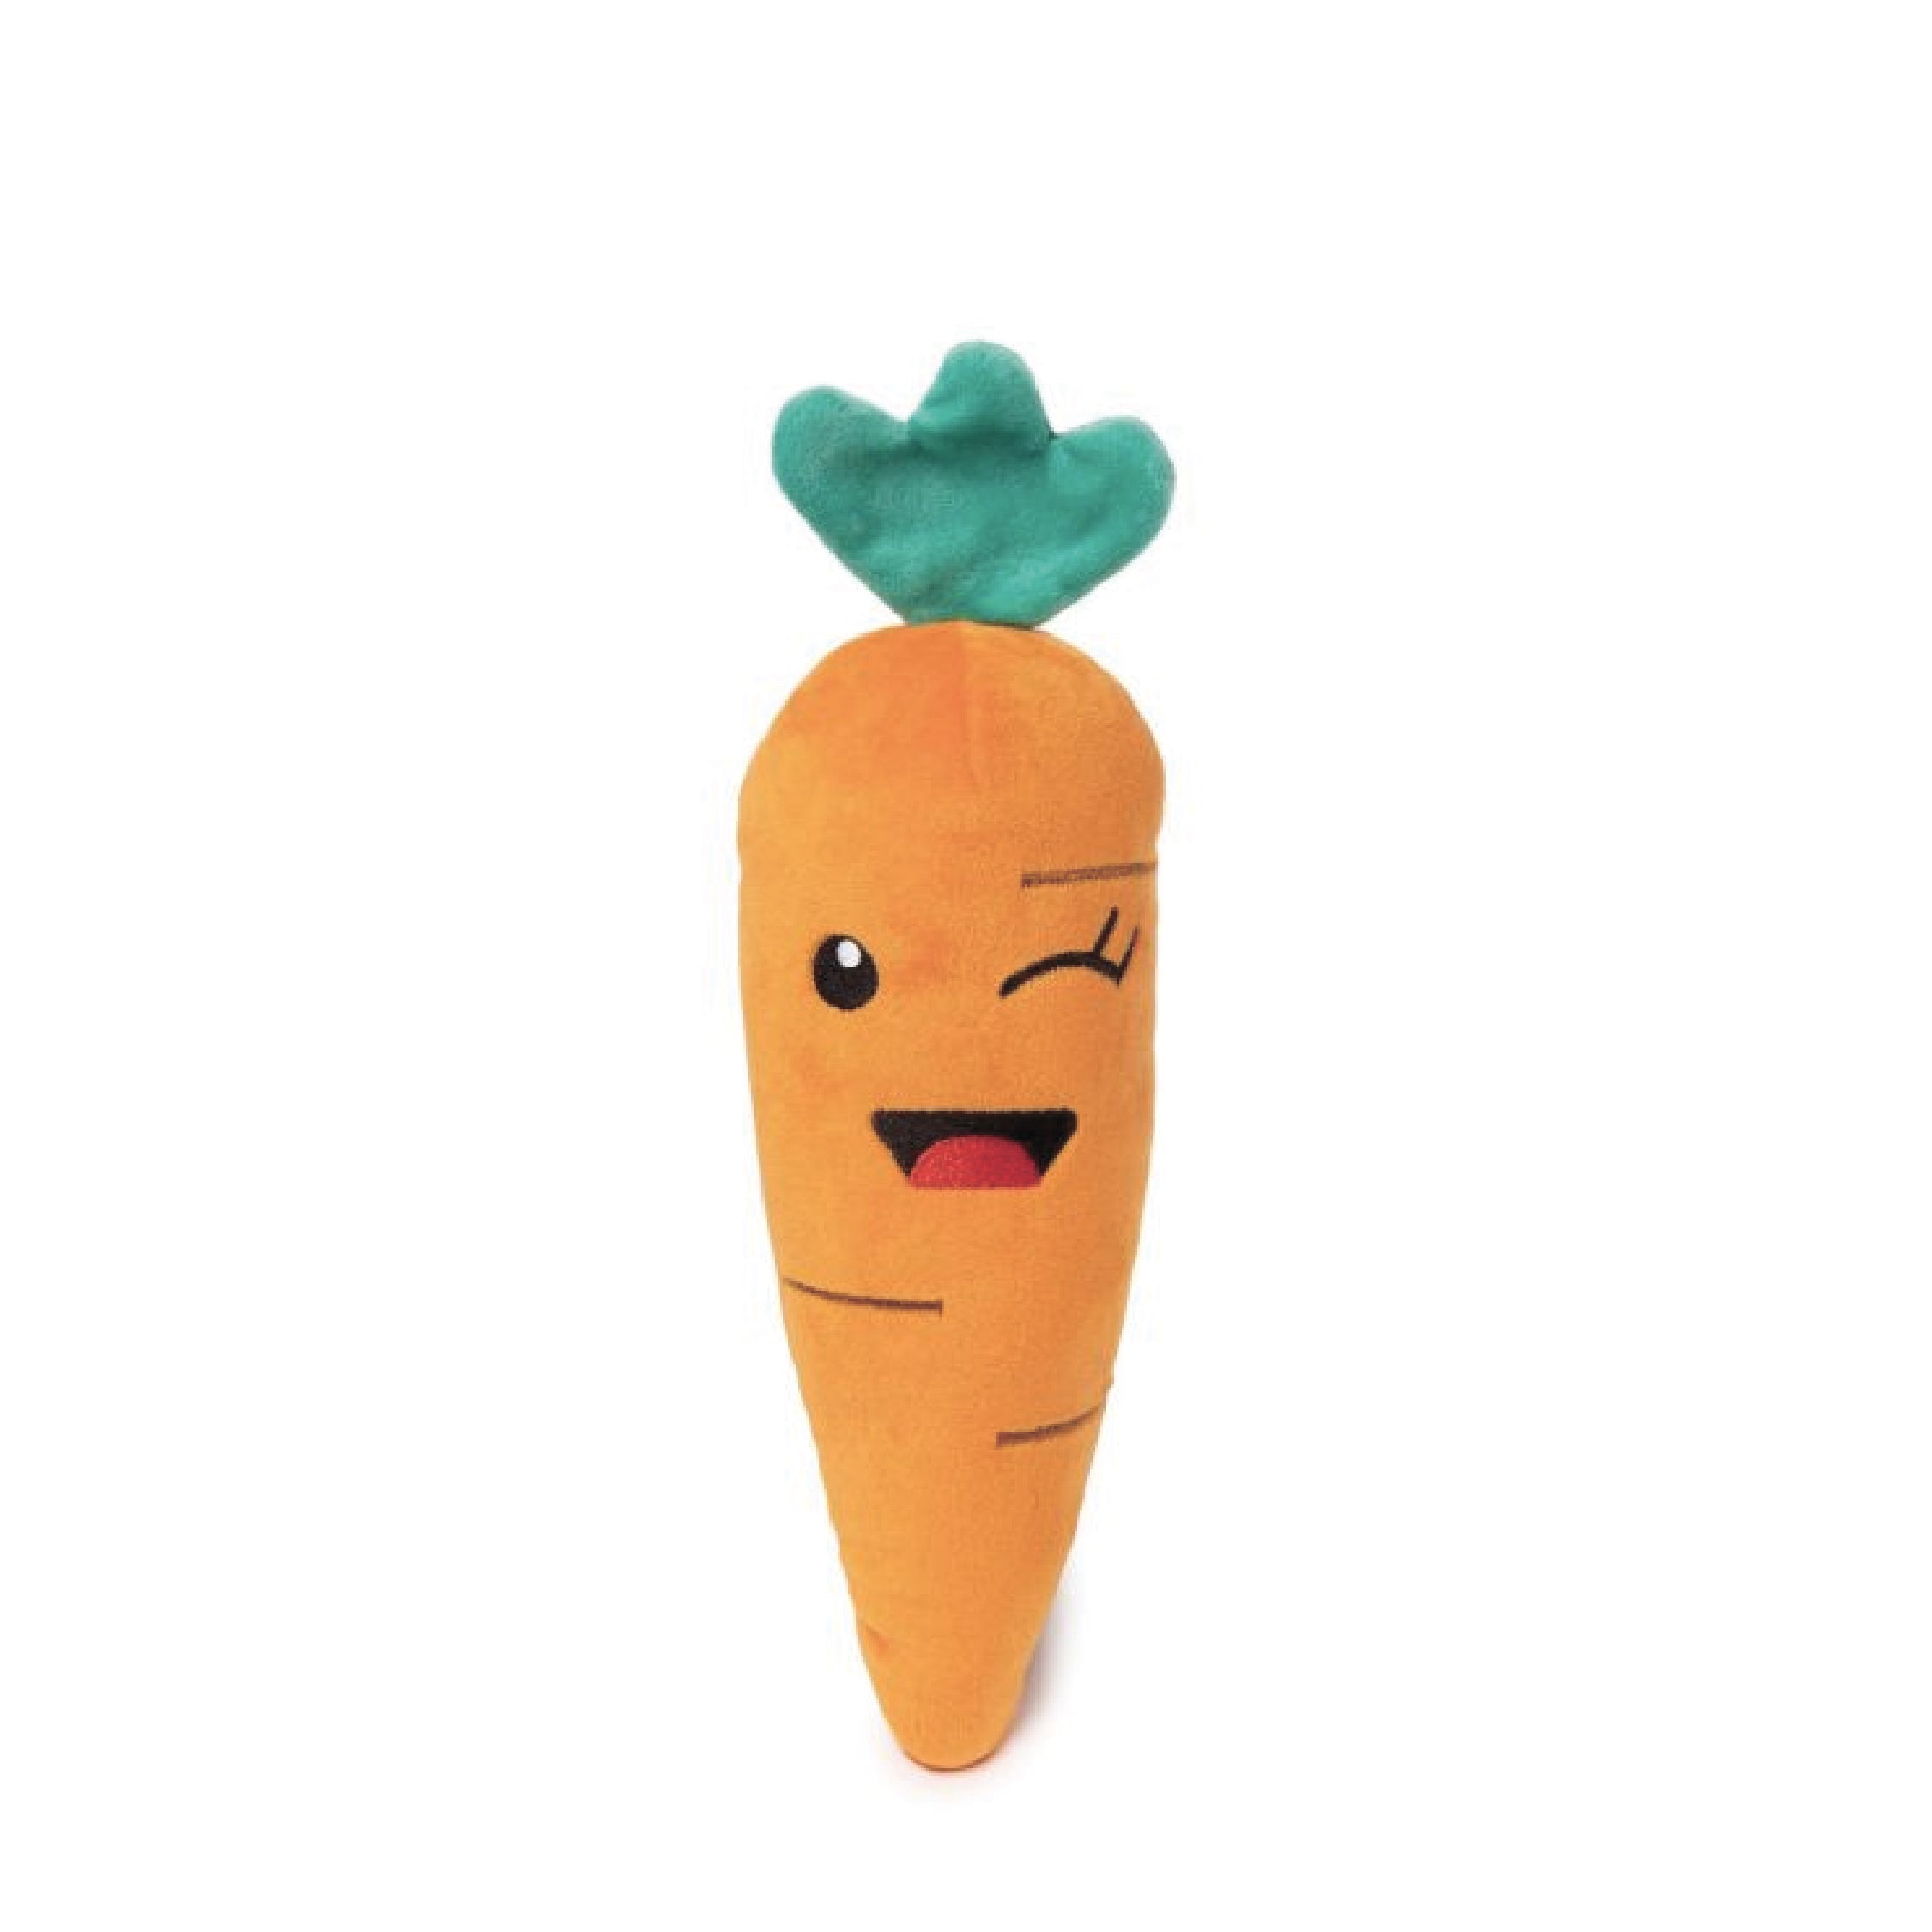 FuzzYard Winky Carrot Plush Dog Toy